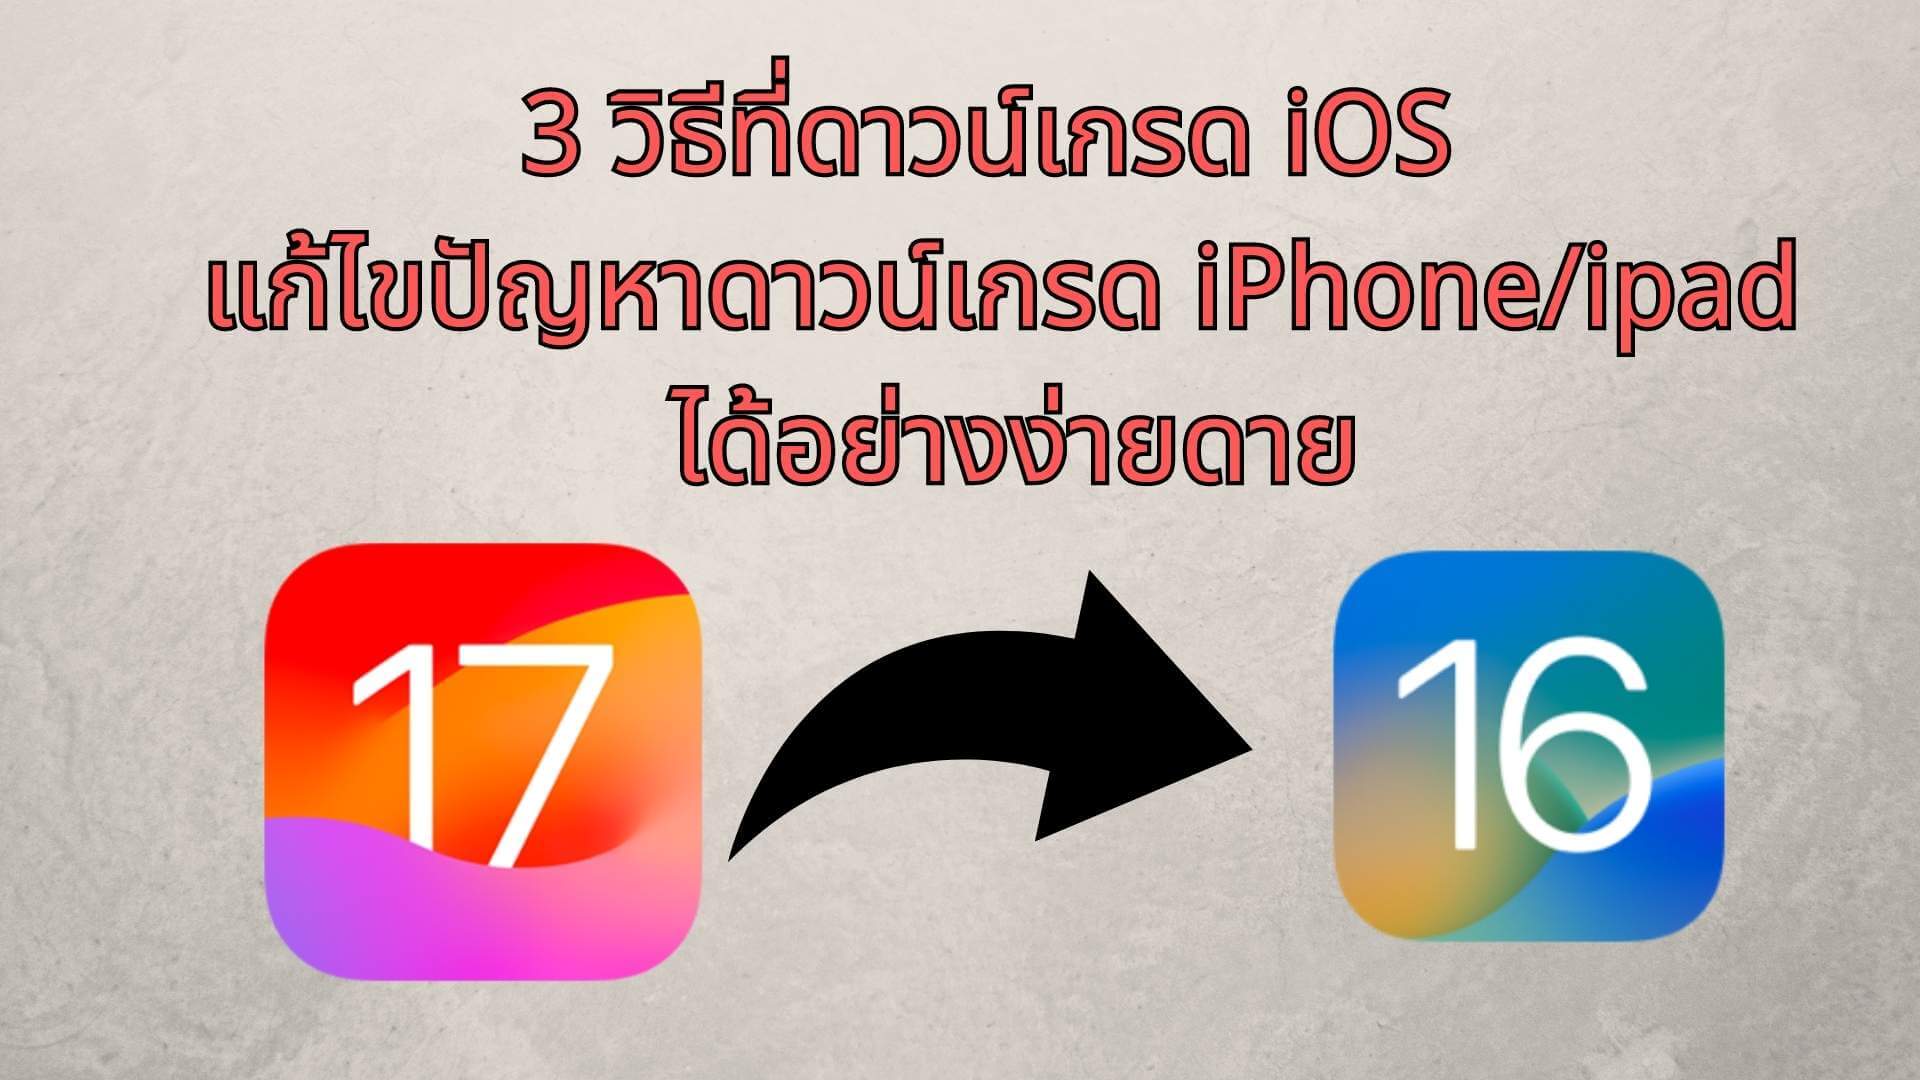 【iOS17】3 วิธีที่ดาวน์เกรด iOS 17 กลับไป iOS 16